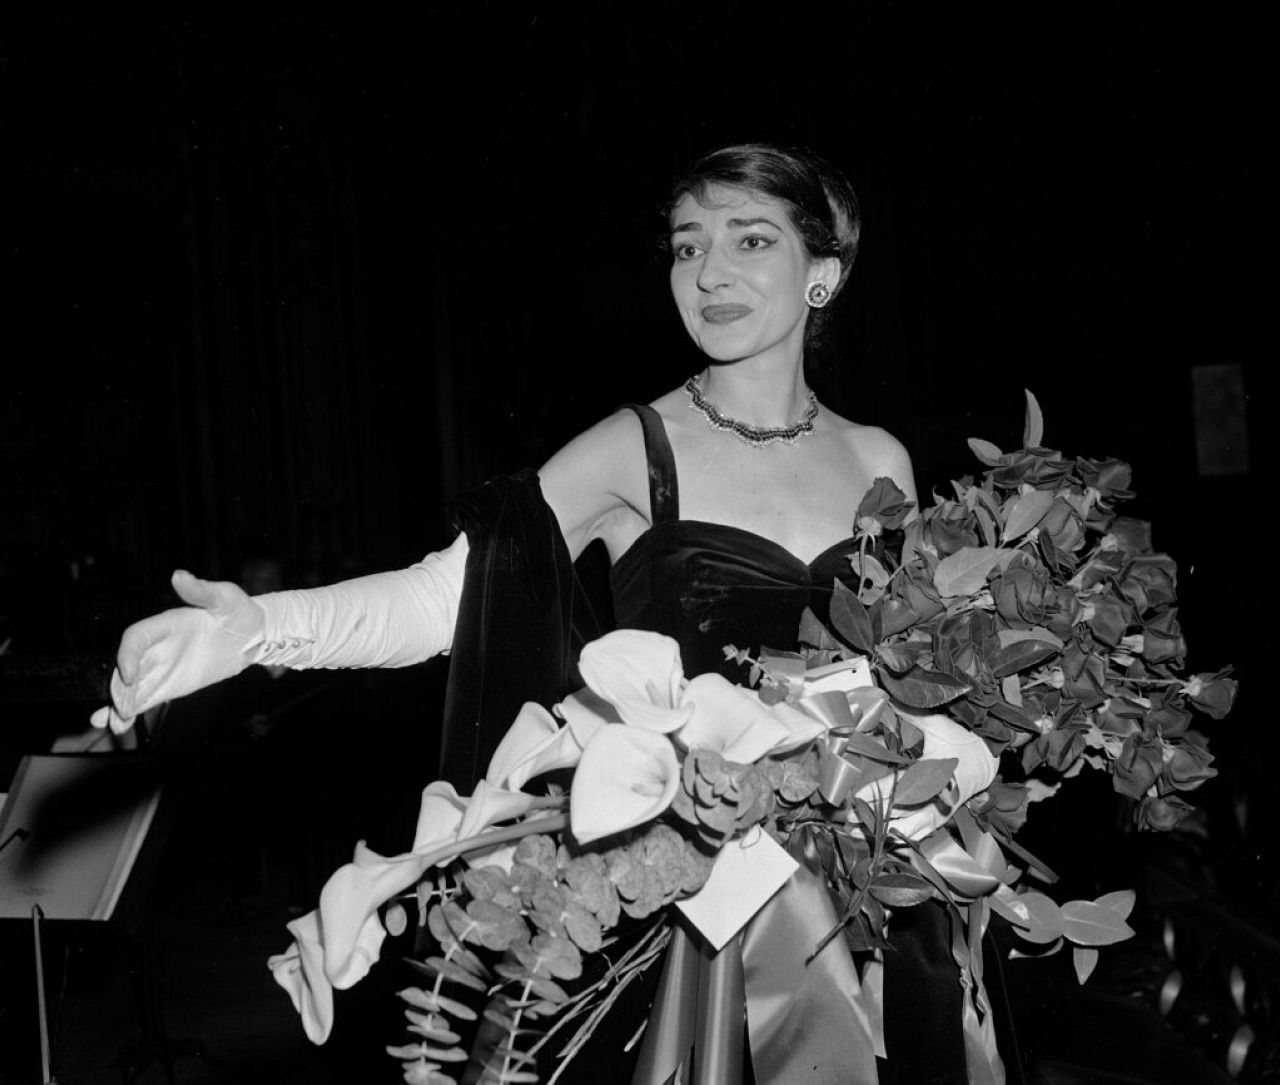 Sopranistka operowa Maria Callas wita wiwaty publiczności w Civic Opera House w Chicago, 22 stycznia 1958 r.